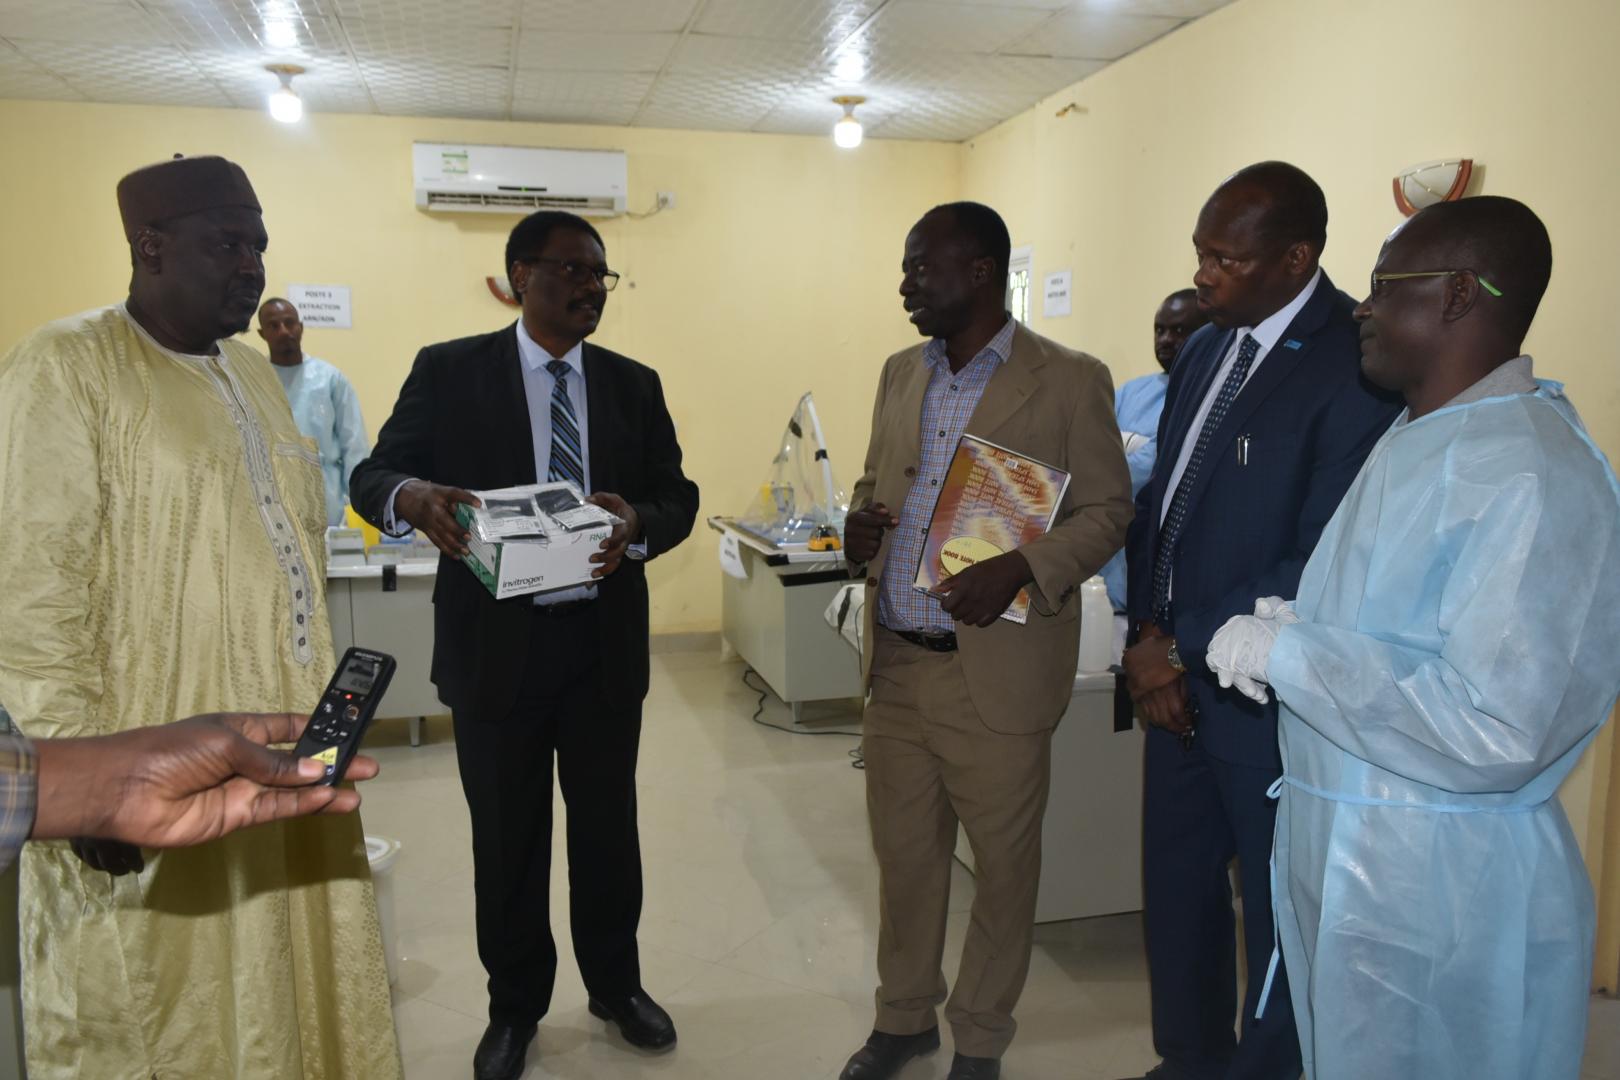 Les kits de réactifs COVID-19 remis officiellement par l’OMS aux autorités sanitaires nationales. A gauche et au premier plan (costume sombre) le Ministre de la santé publique